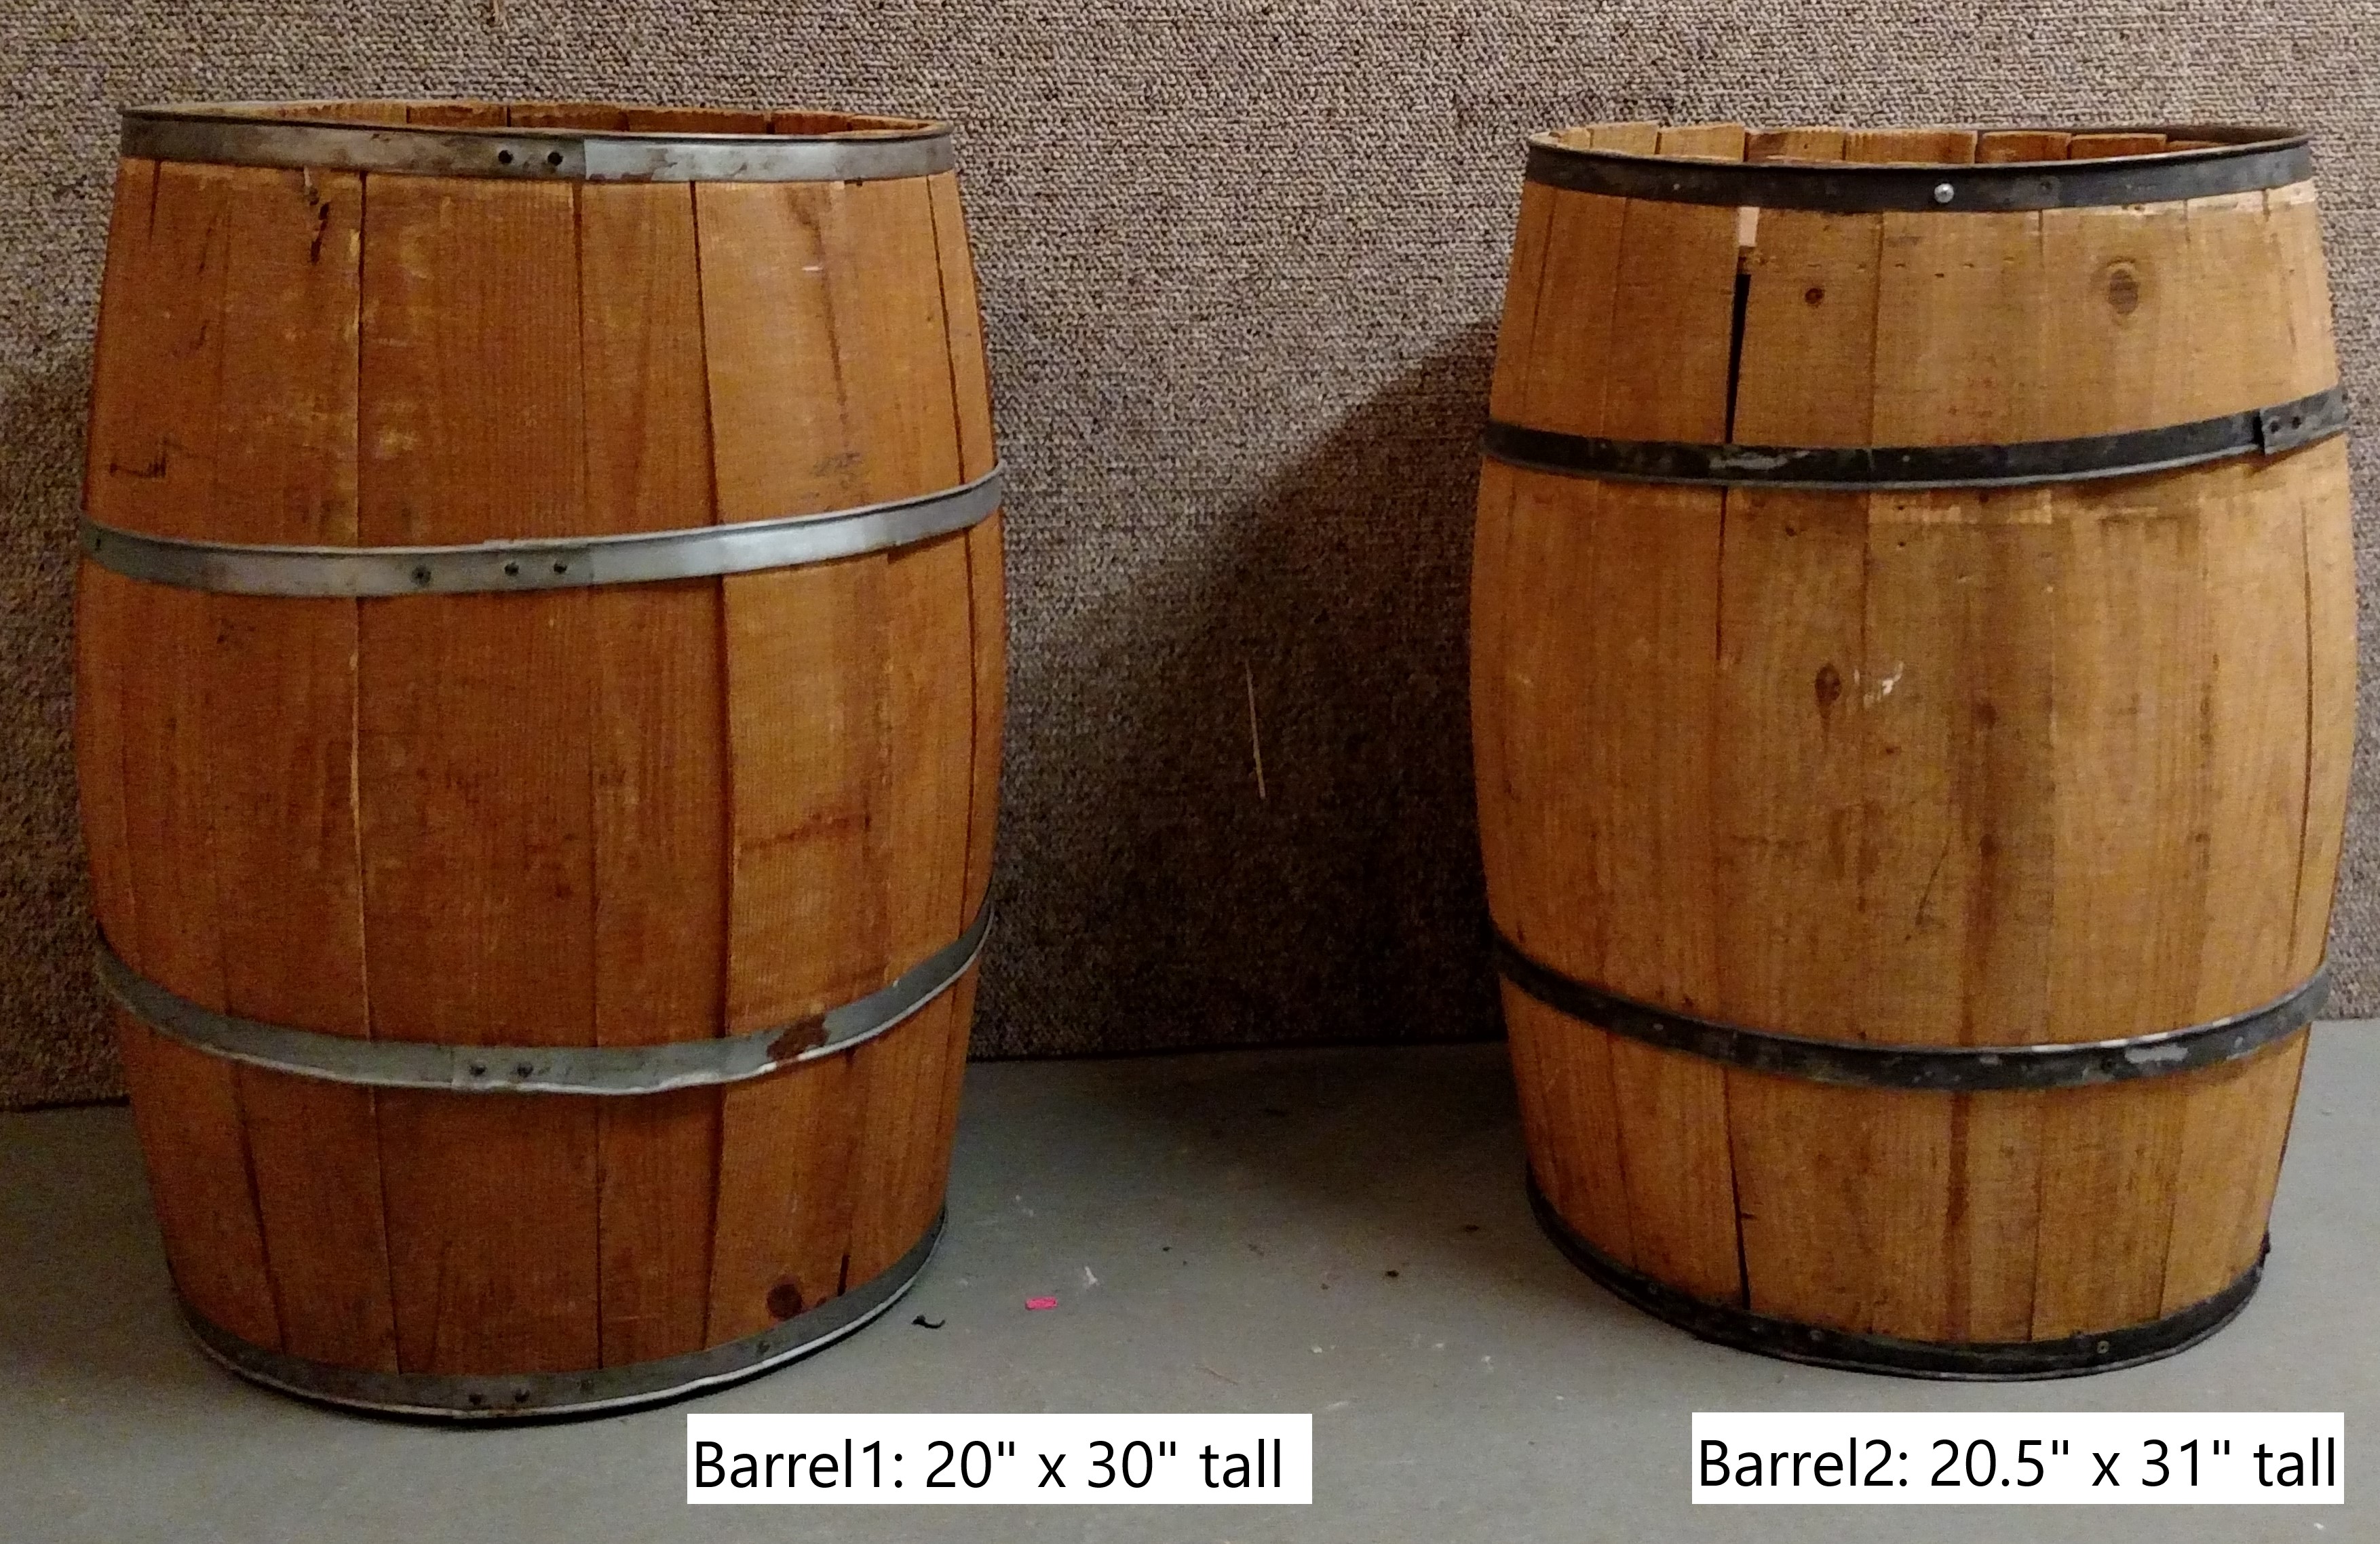 Barrel1